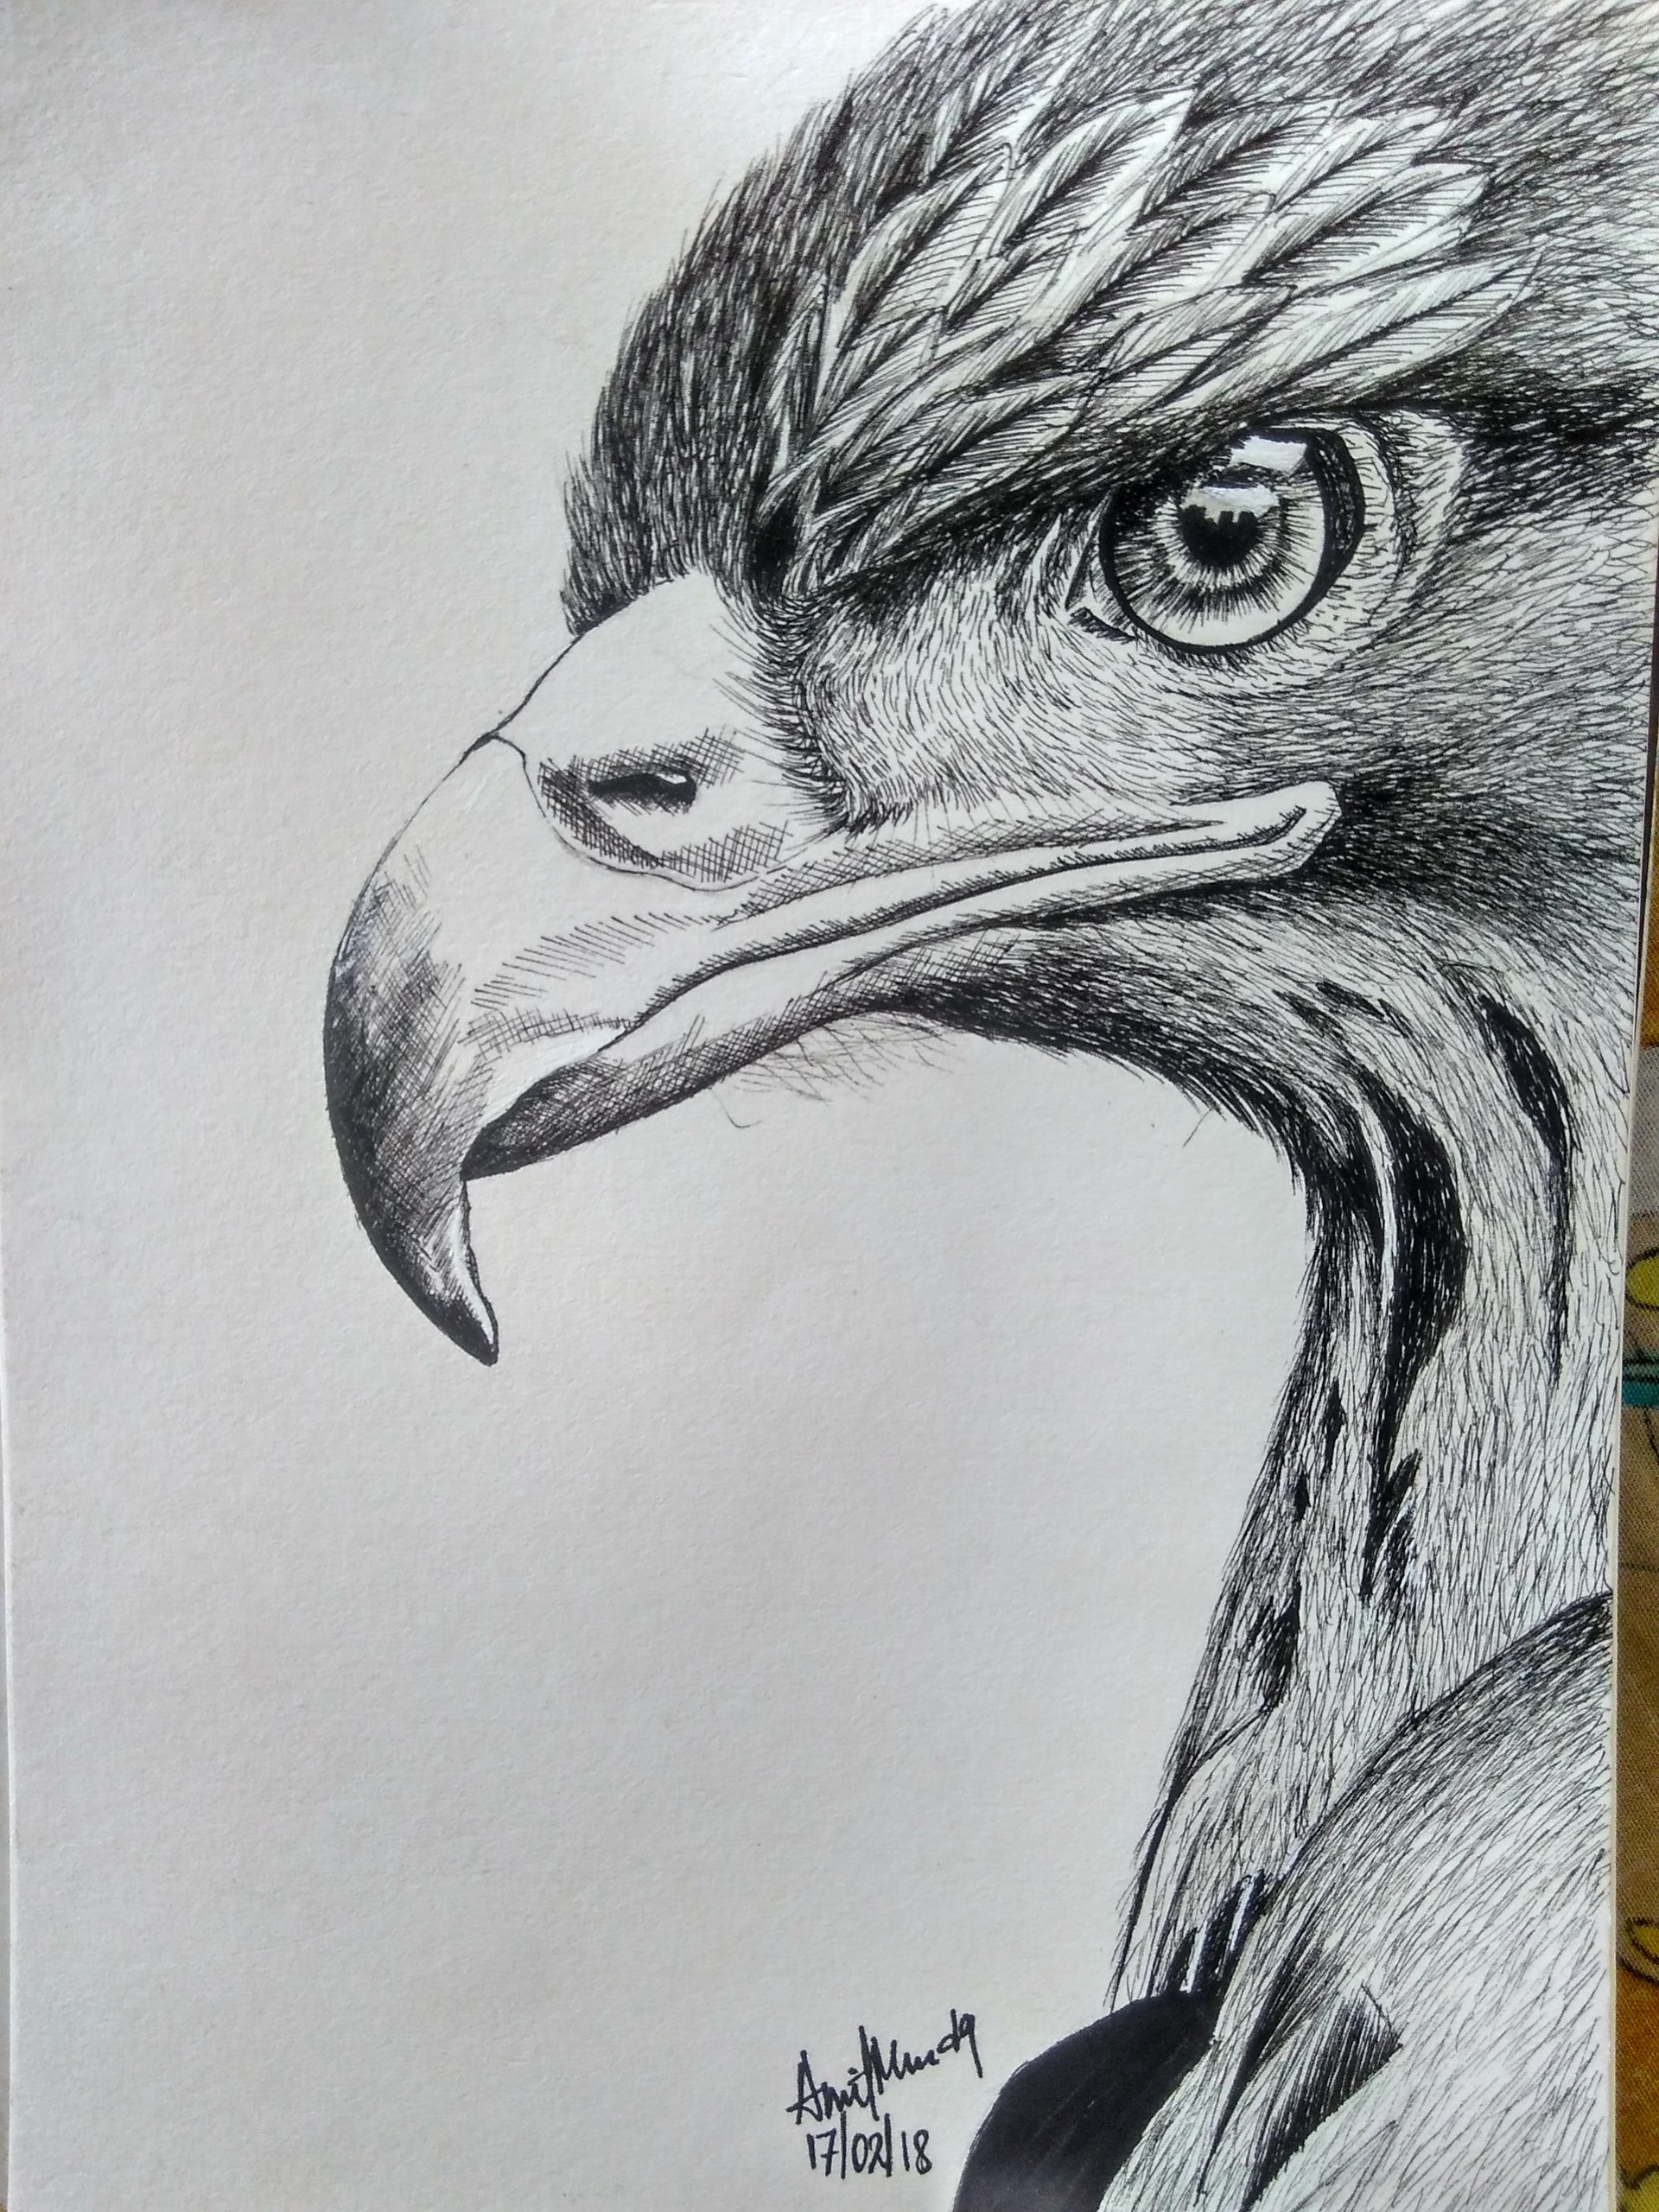 ArtStation - Ink sketch of an eagle